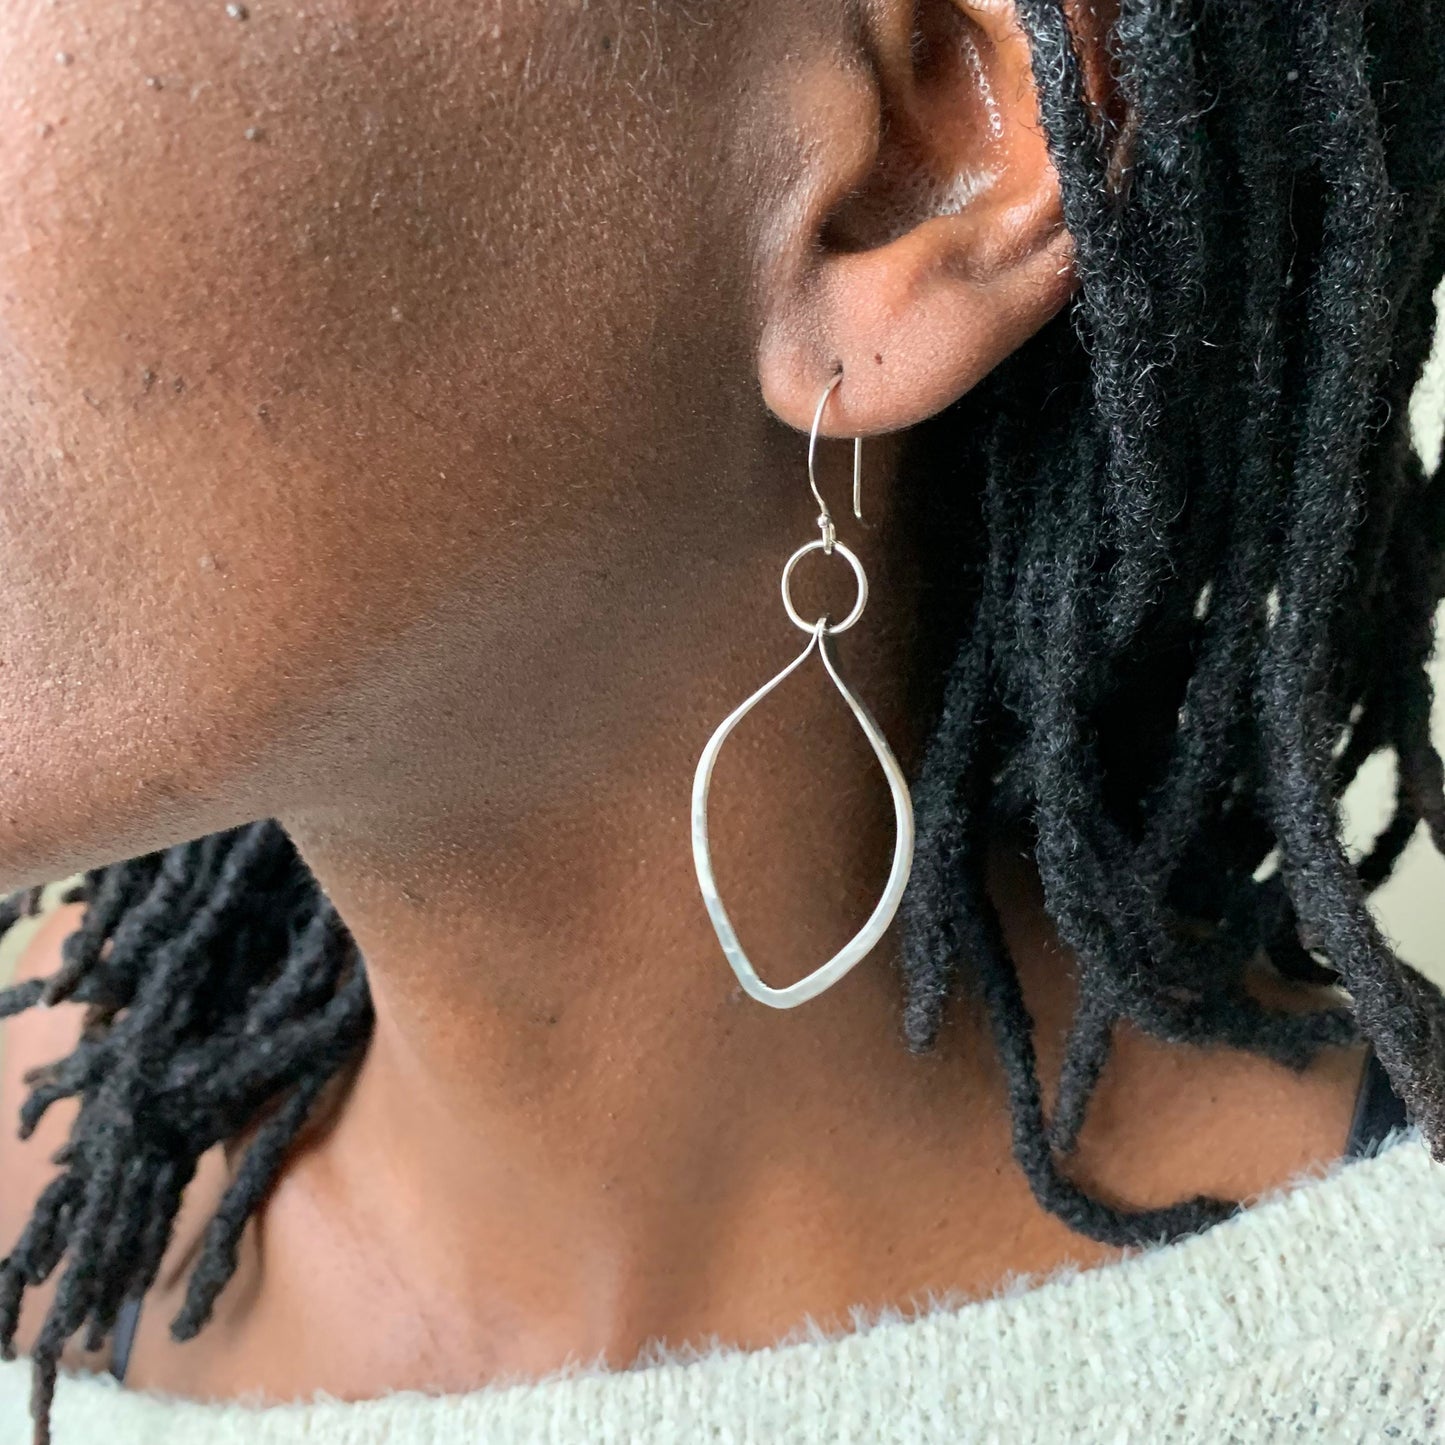 Silver leaf earrings - nature theme jewelry - sterling earrings - boho jewelry - street style - earthy, everyday earrings - gifts for women